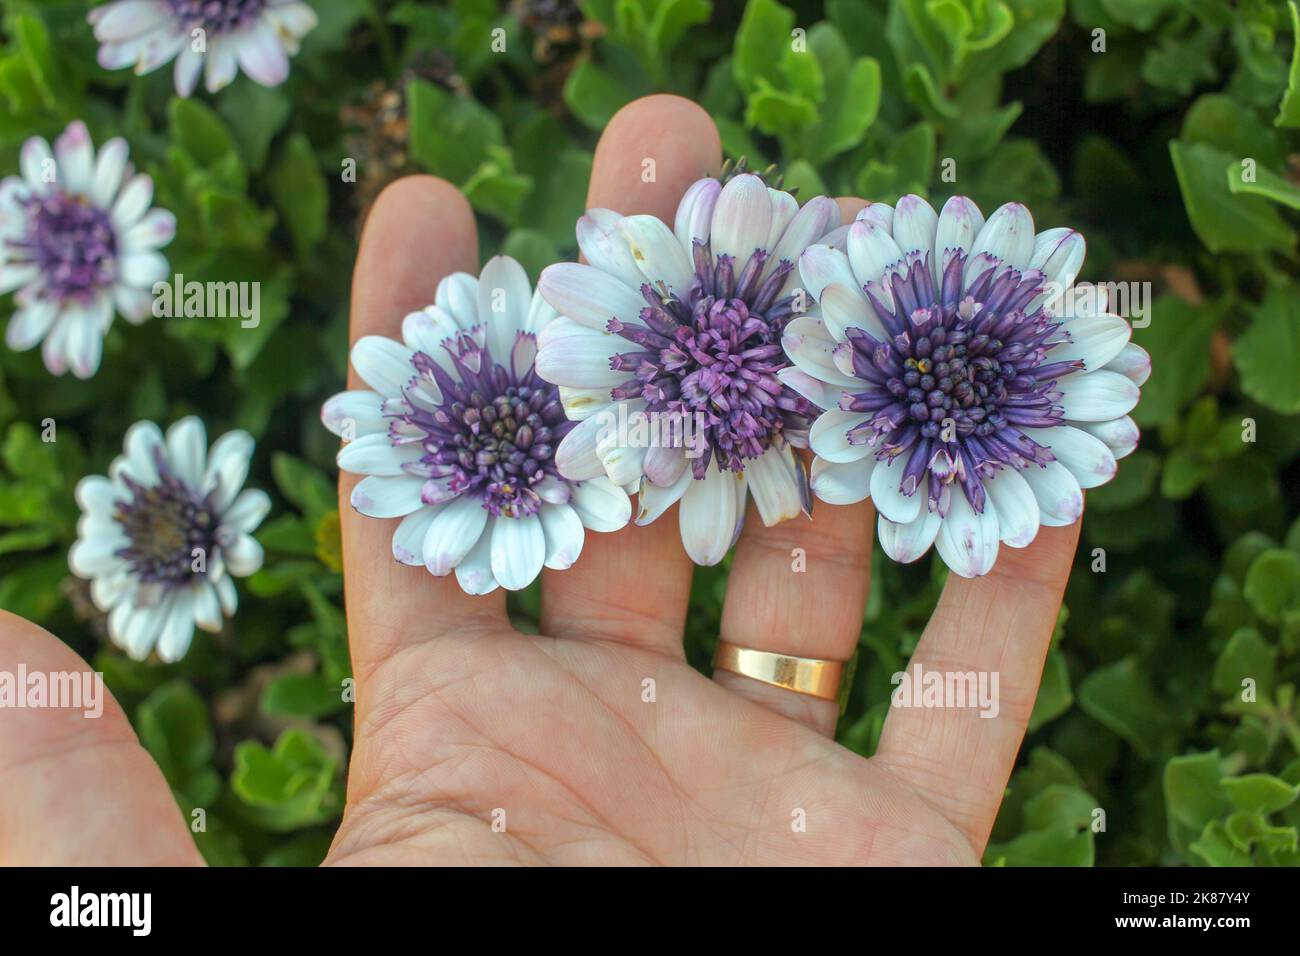 Einige violette und weiße Osteospermum-Blüten auf den Händen einer kaukasischen Person Stockfoto